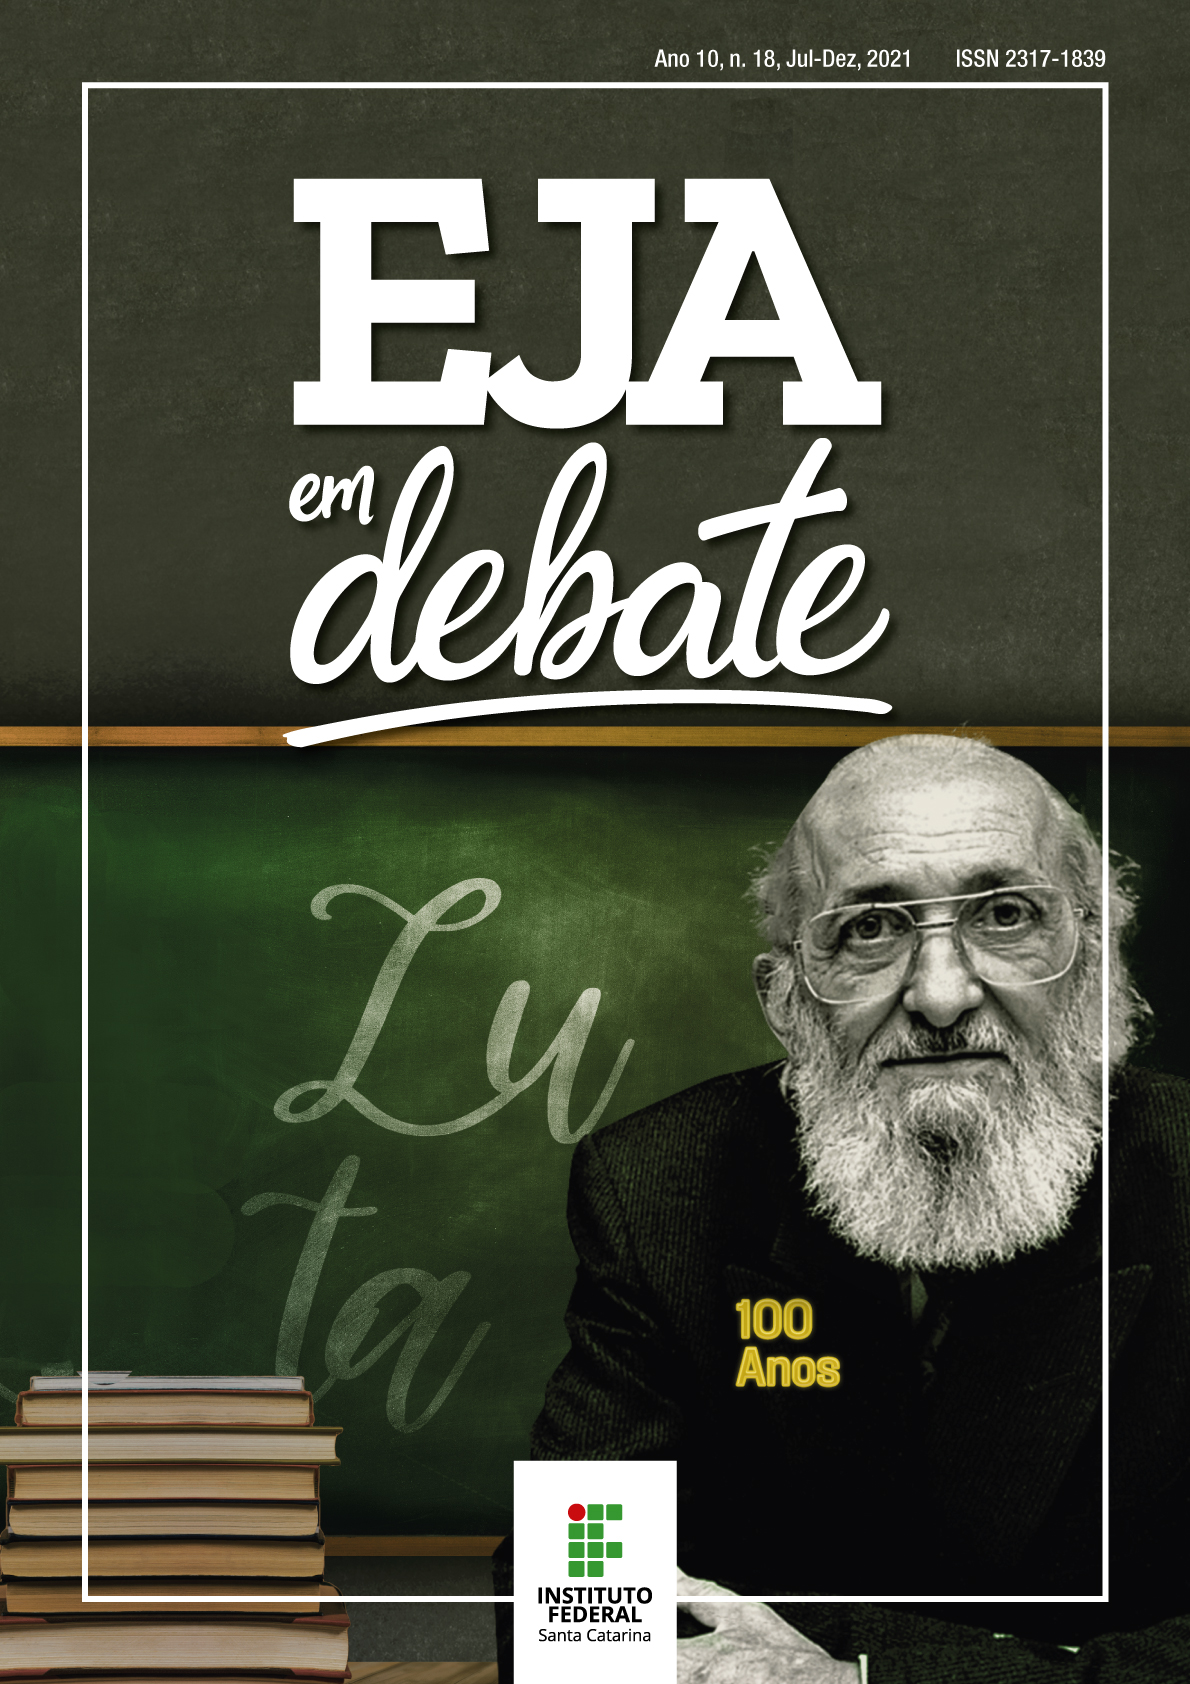 A capa traz a foto de Paulo Freire, com um quadro negro atrás, no qual se encontra escrita a palavra "luta". Ao lado do educador, estão alguns livros. Em seu casaco, verde escuro, há um broche escrito "100 anos", fazendo remissão ao seu centenário de nascimento (em 1921).